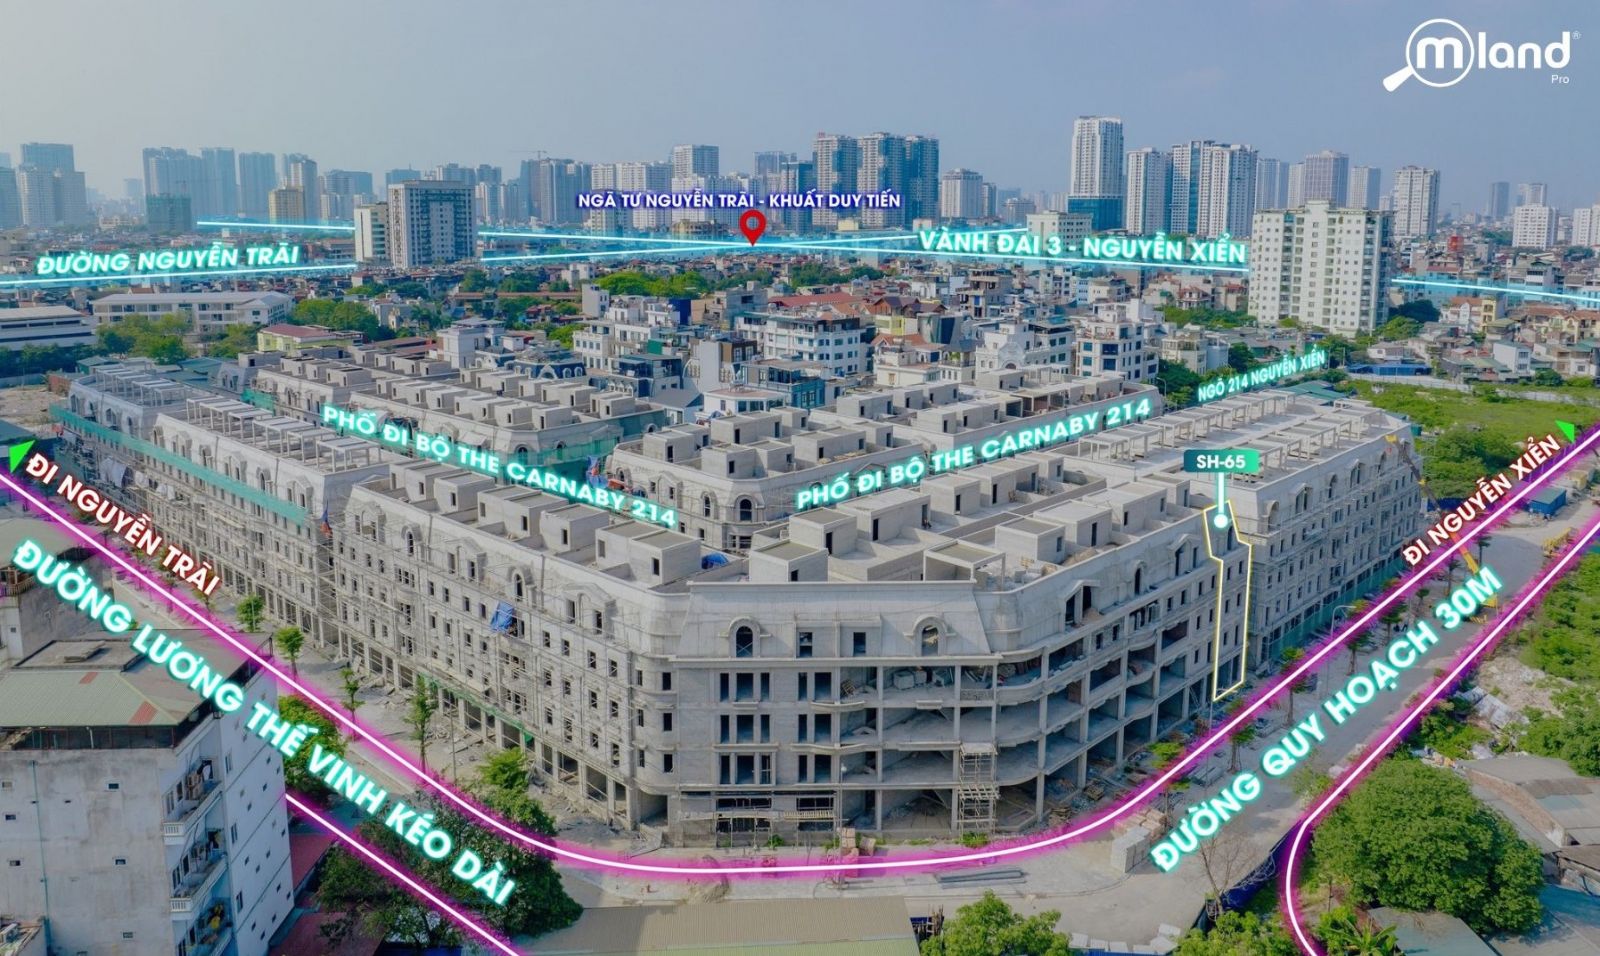 RUE de CHARME hiện được xem là dự án nổi bật nhất nội đô Hà Nội